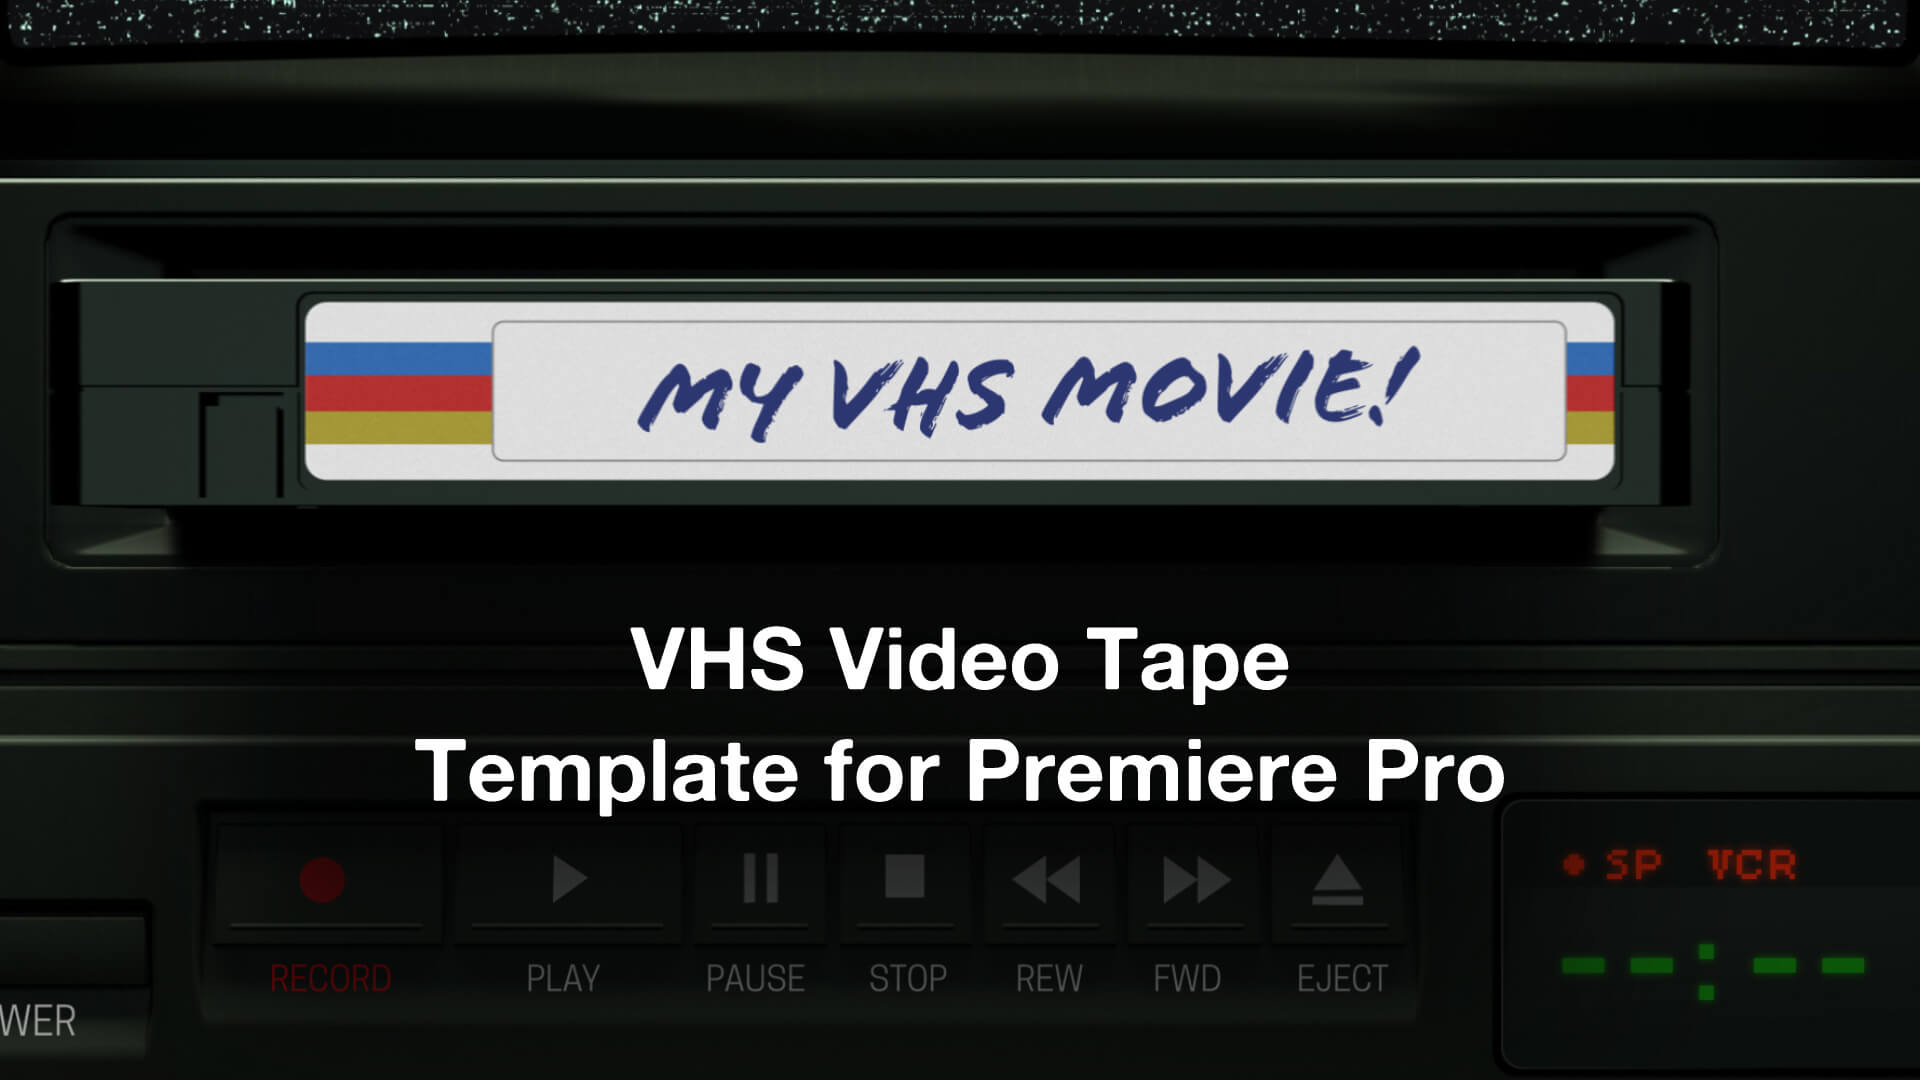 Éjecter une cassette VHS du lecteur vidéo VCR, Vidéos - Envato Elements